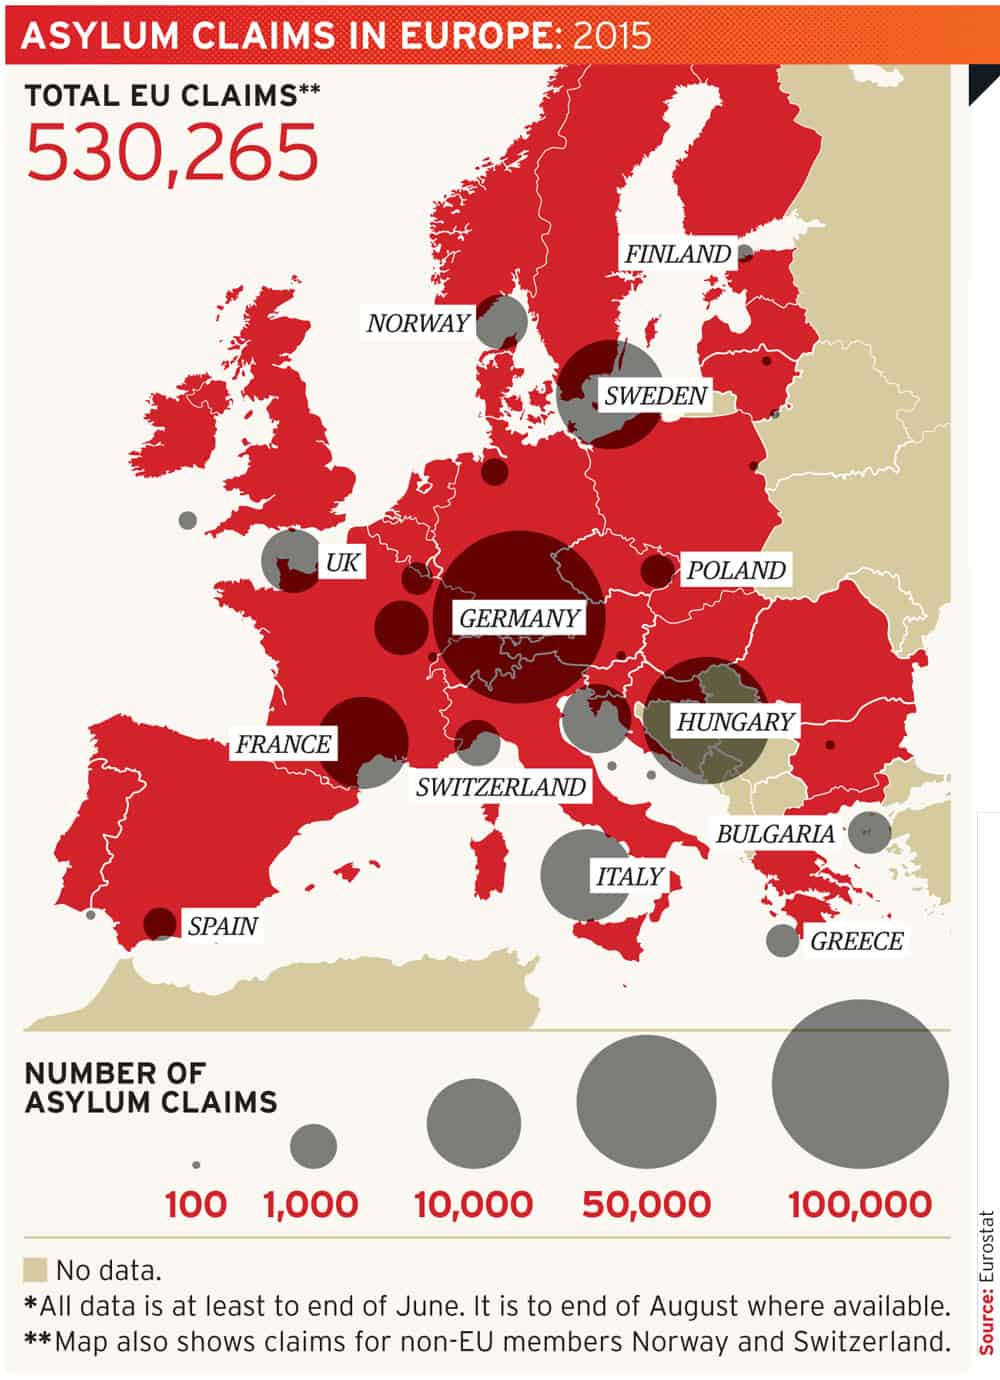 Asylum claims